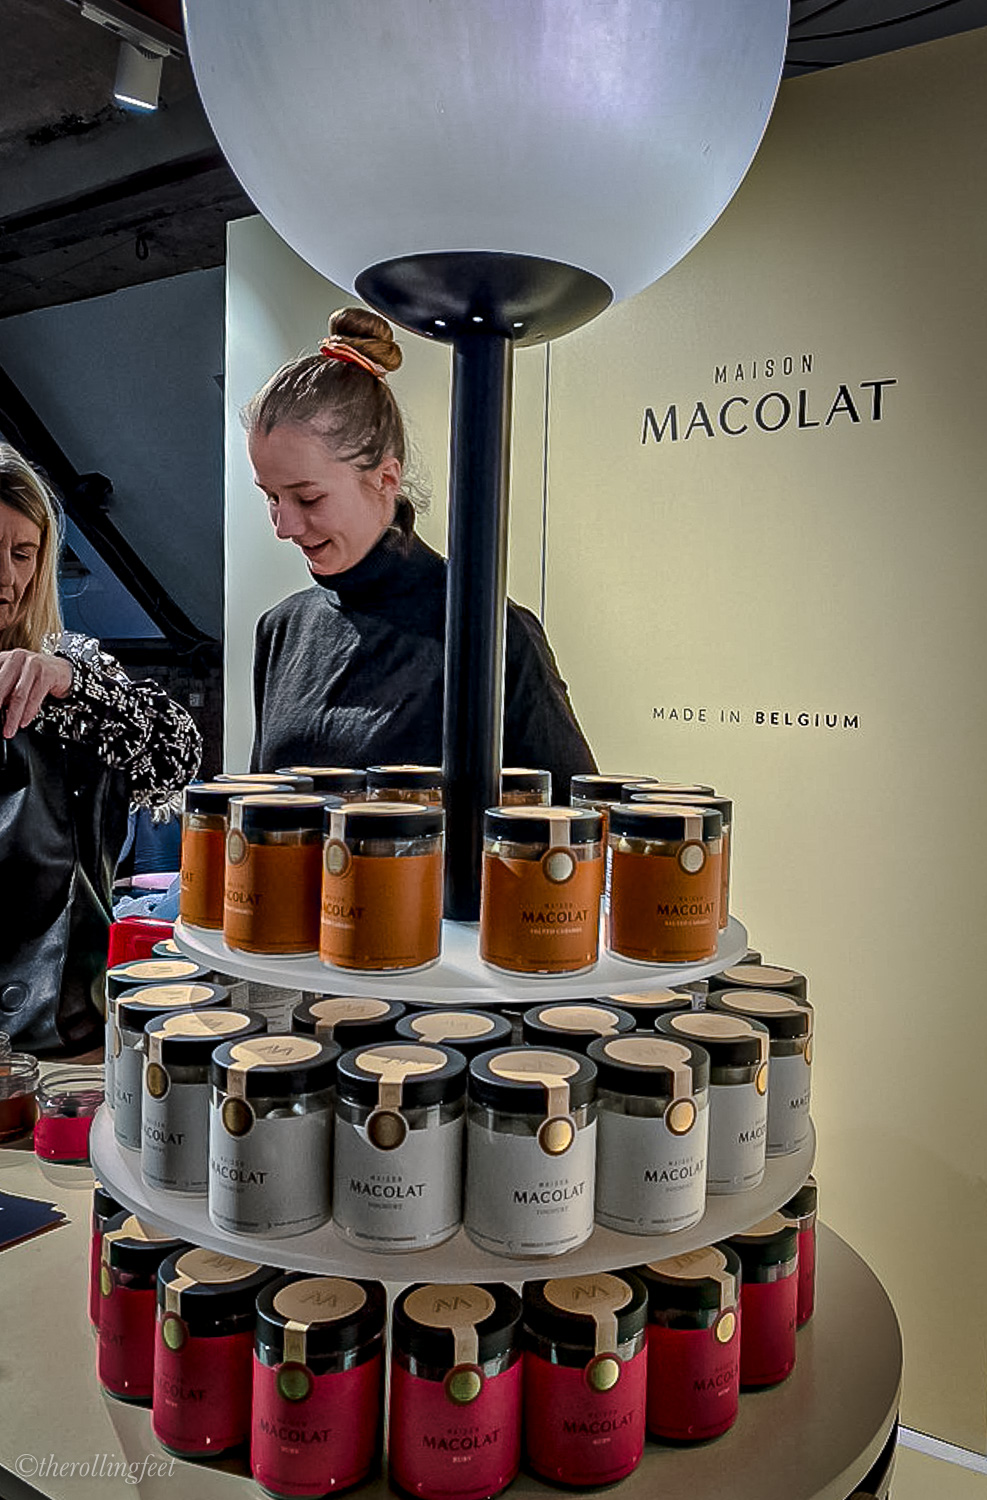 Macolat Chocolates stall at the Berlin fashion week